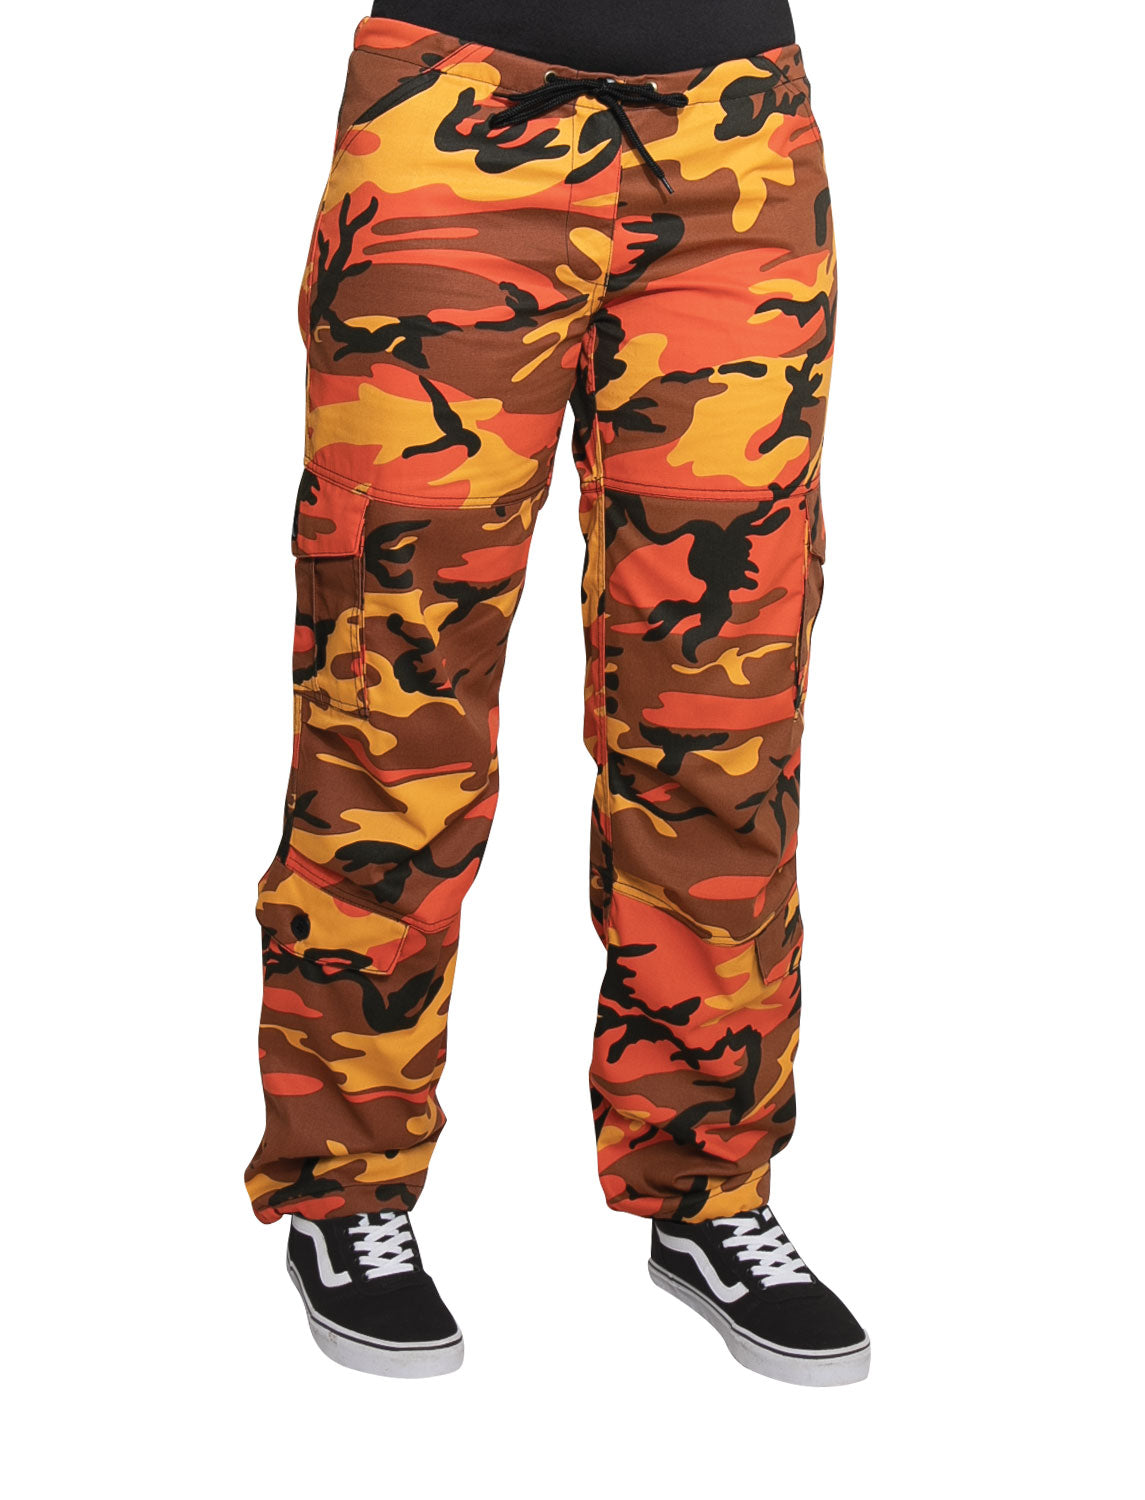 Women's Color Camo Paratrooper BDU Pants